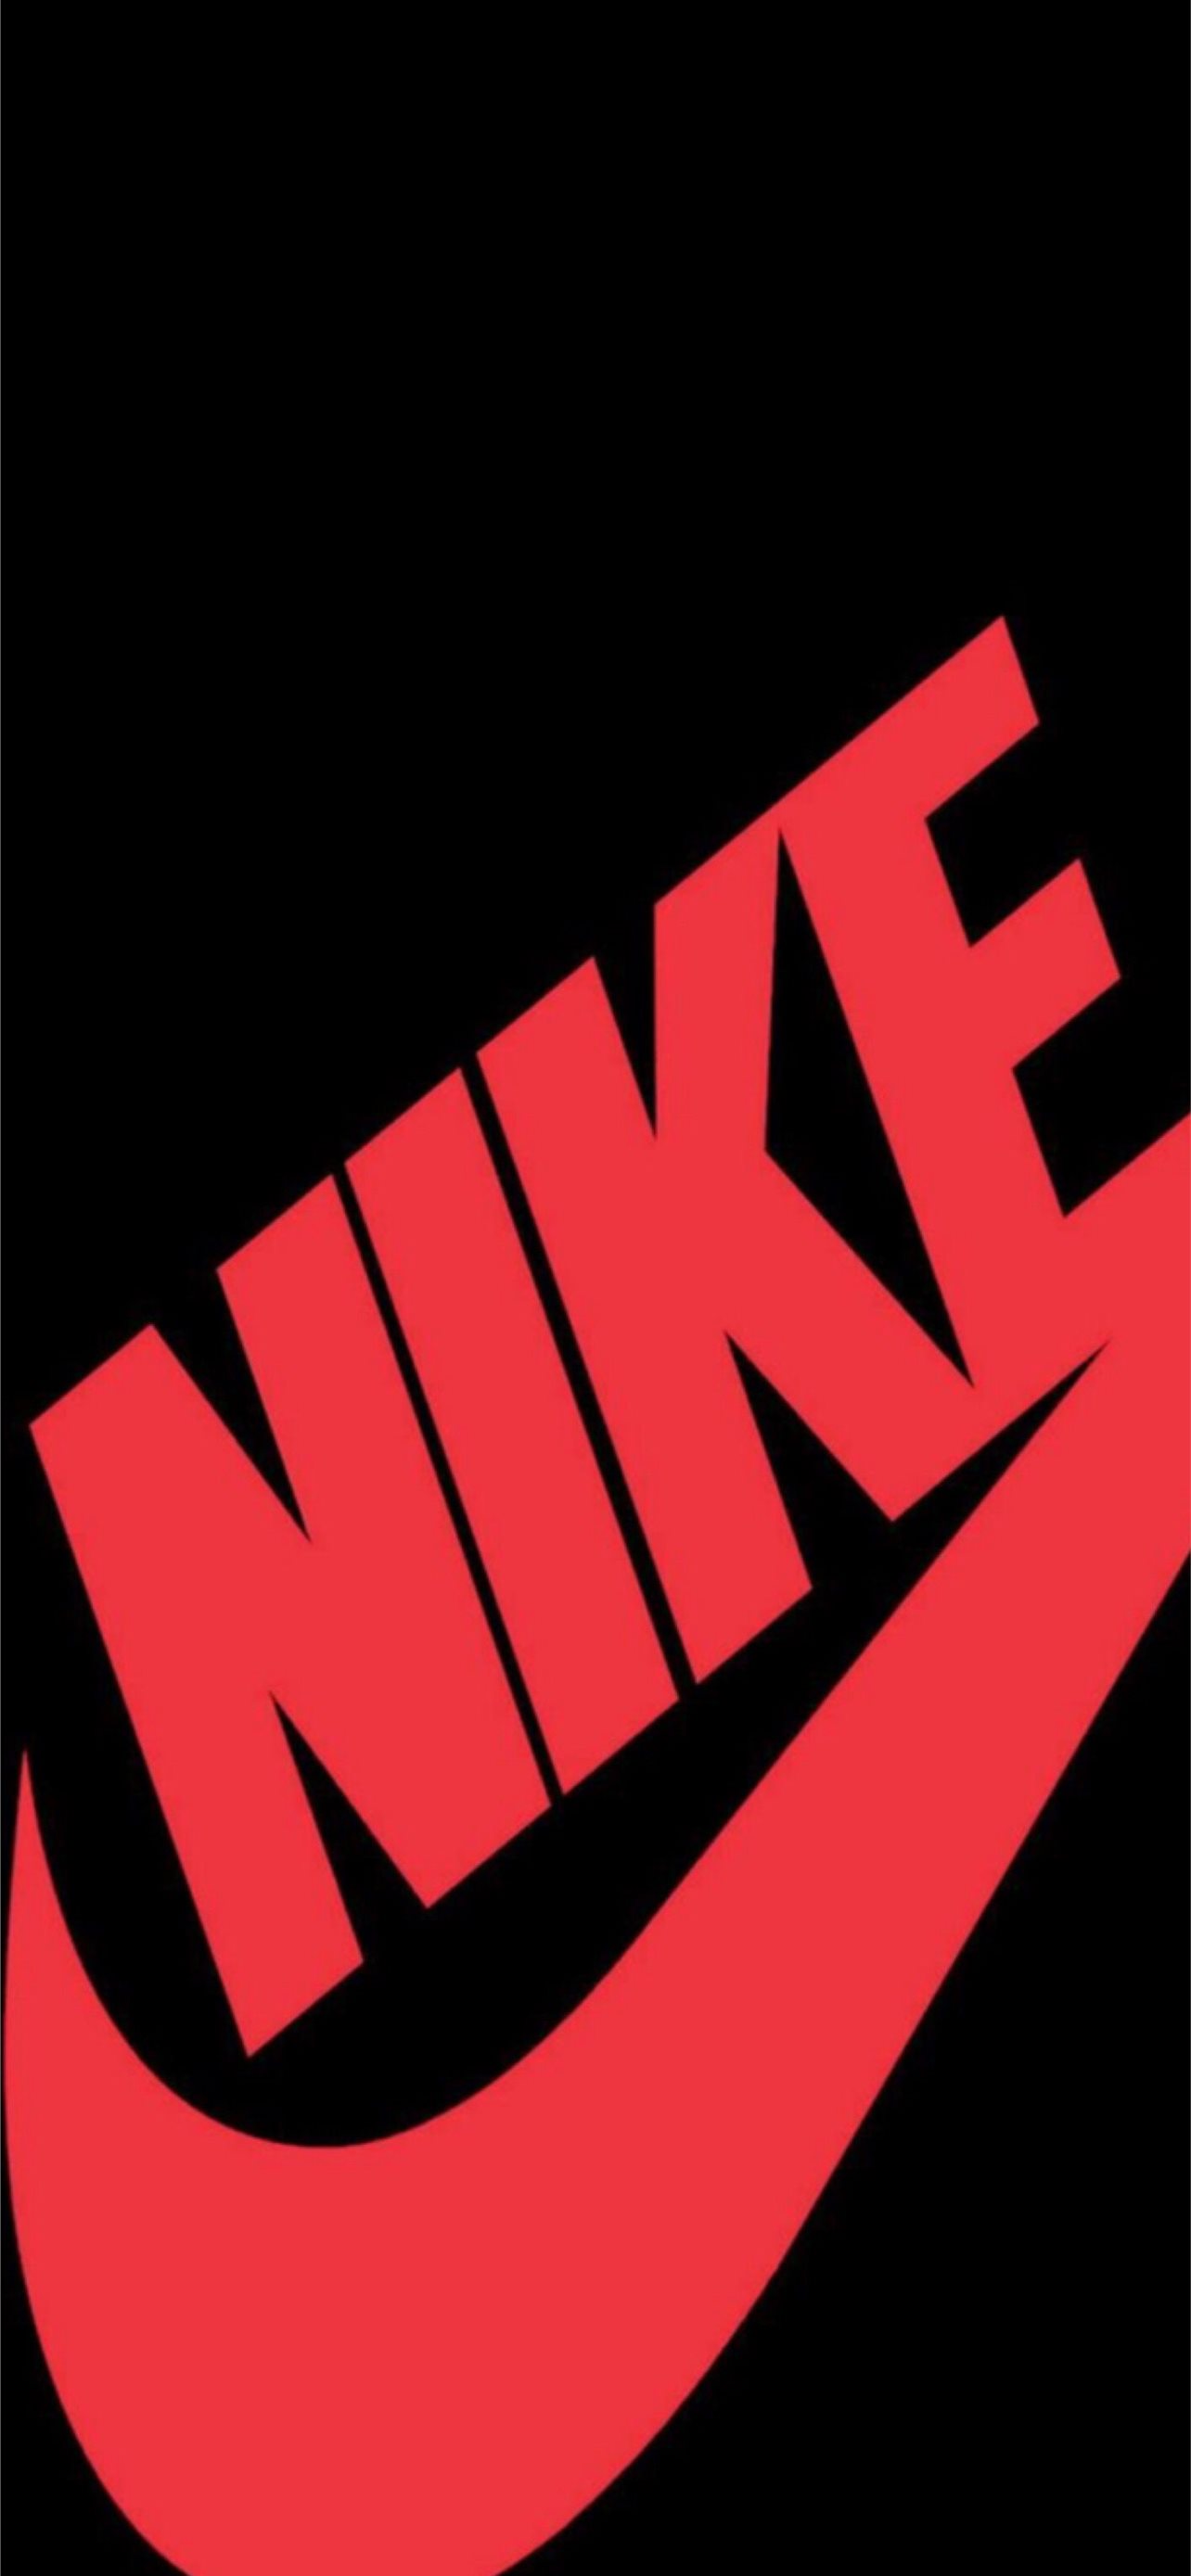 Hãy tải ngay những hình nền cho điện thoại iPhone với logo Nike đầy sức mạnh và phong cách thể thao độc đáo. Được thiết kế đặc biệt để thể hiện khát khao chiến thắng, logo Nike chắc chắn sẽ truyền cảm hứng cho bạn mỗi khi mở điện thoại.